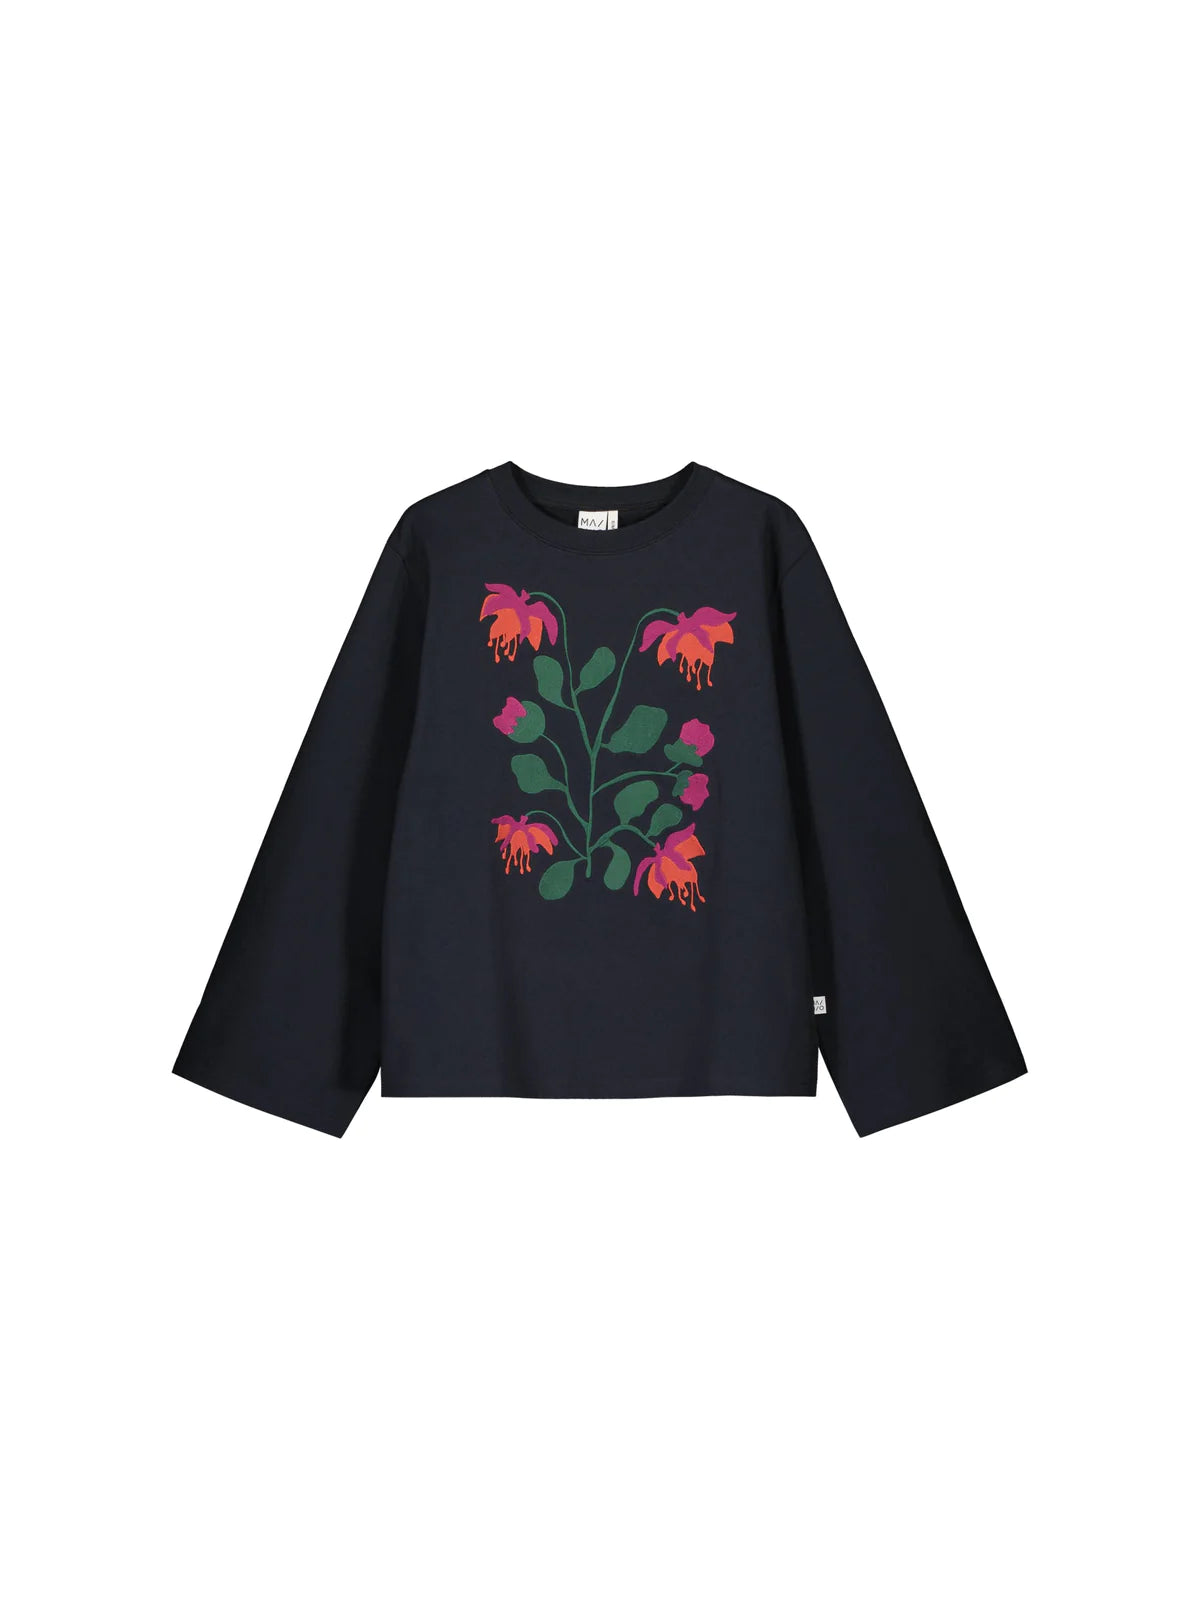 Adults Botania Embroidery Sweatshirt SIZE XS